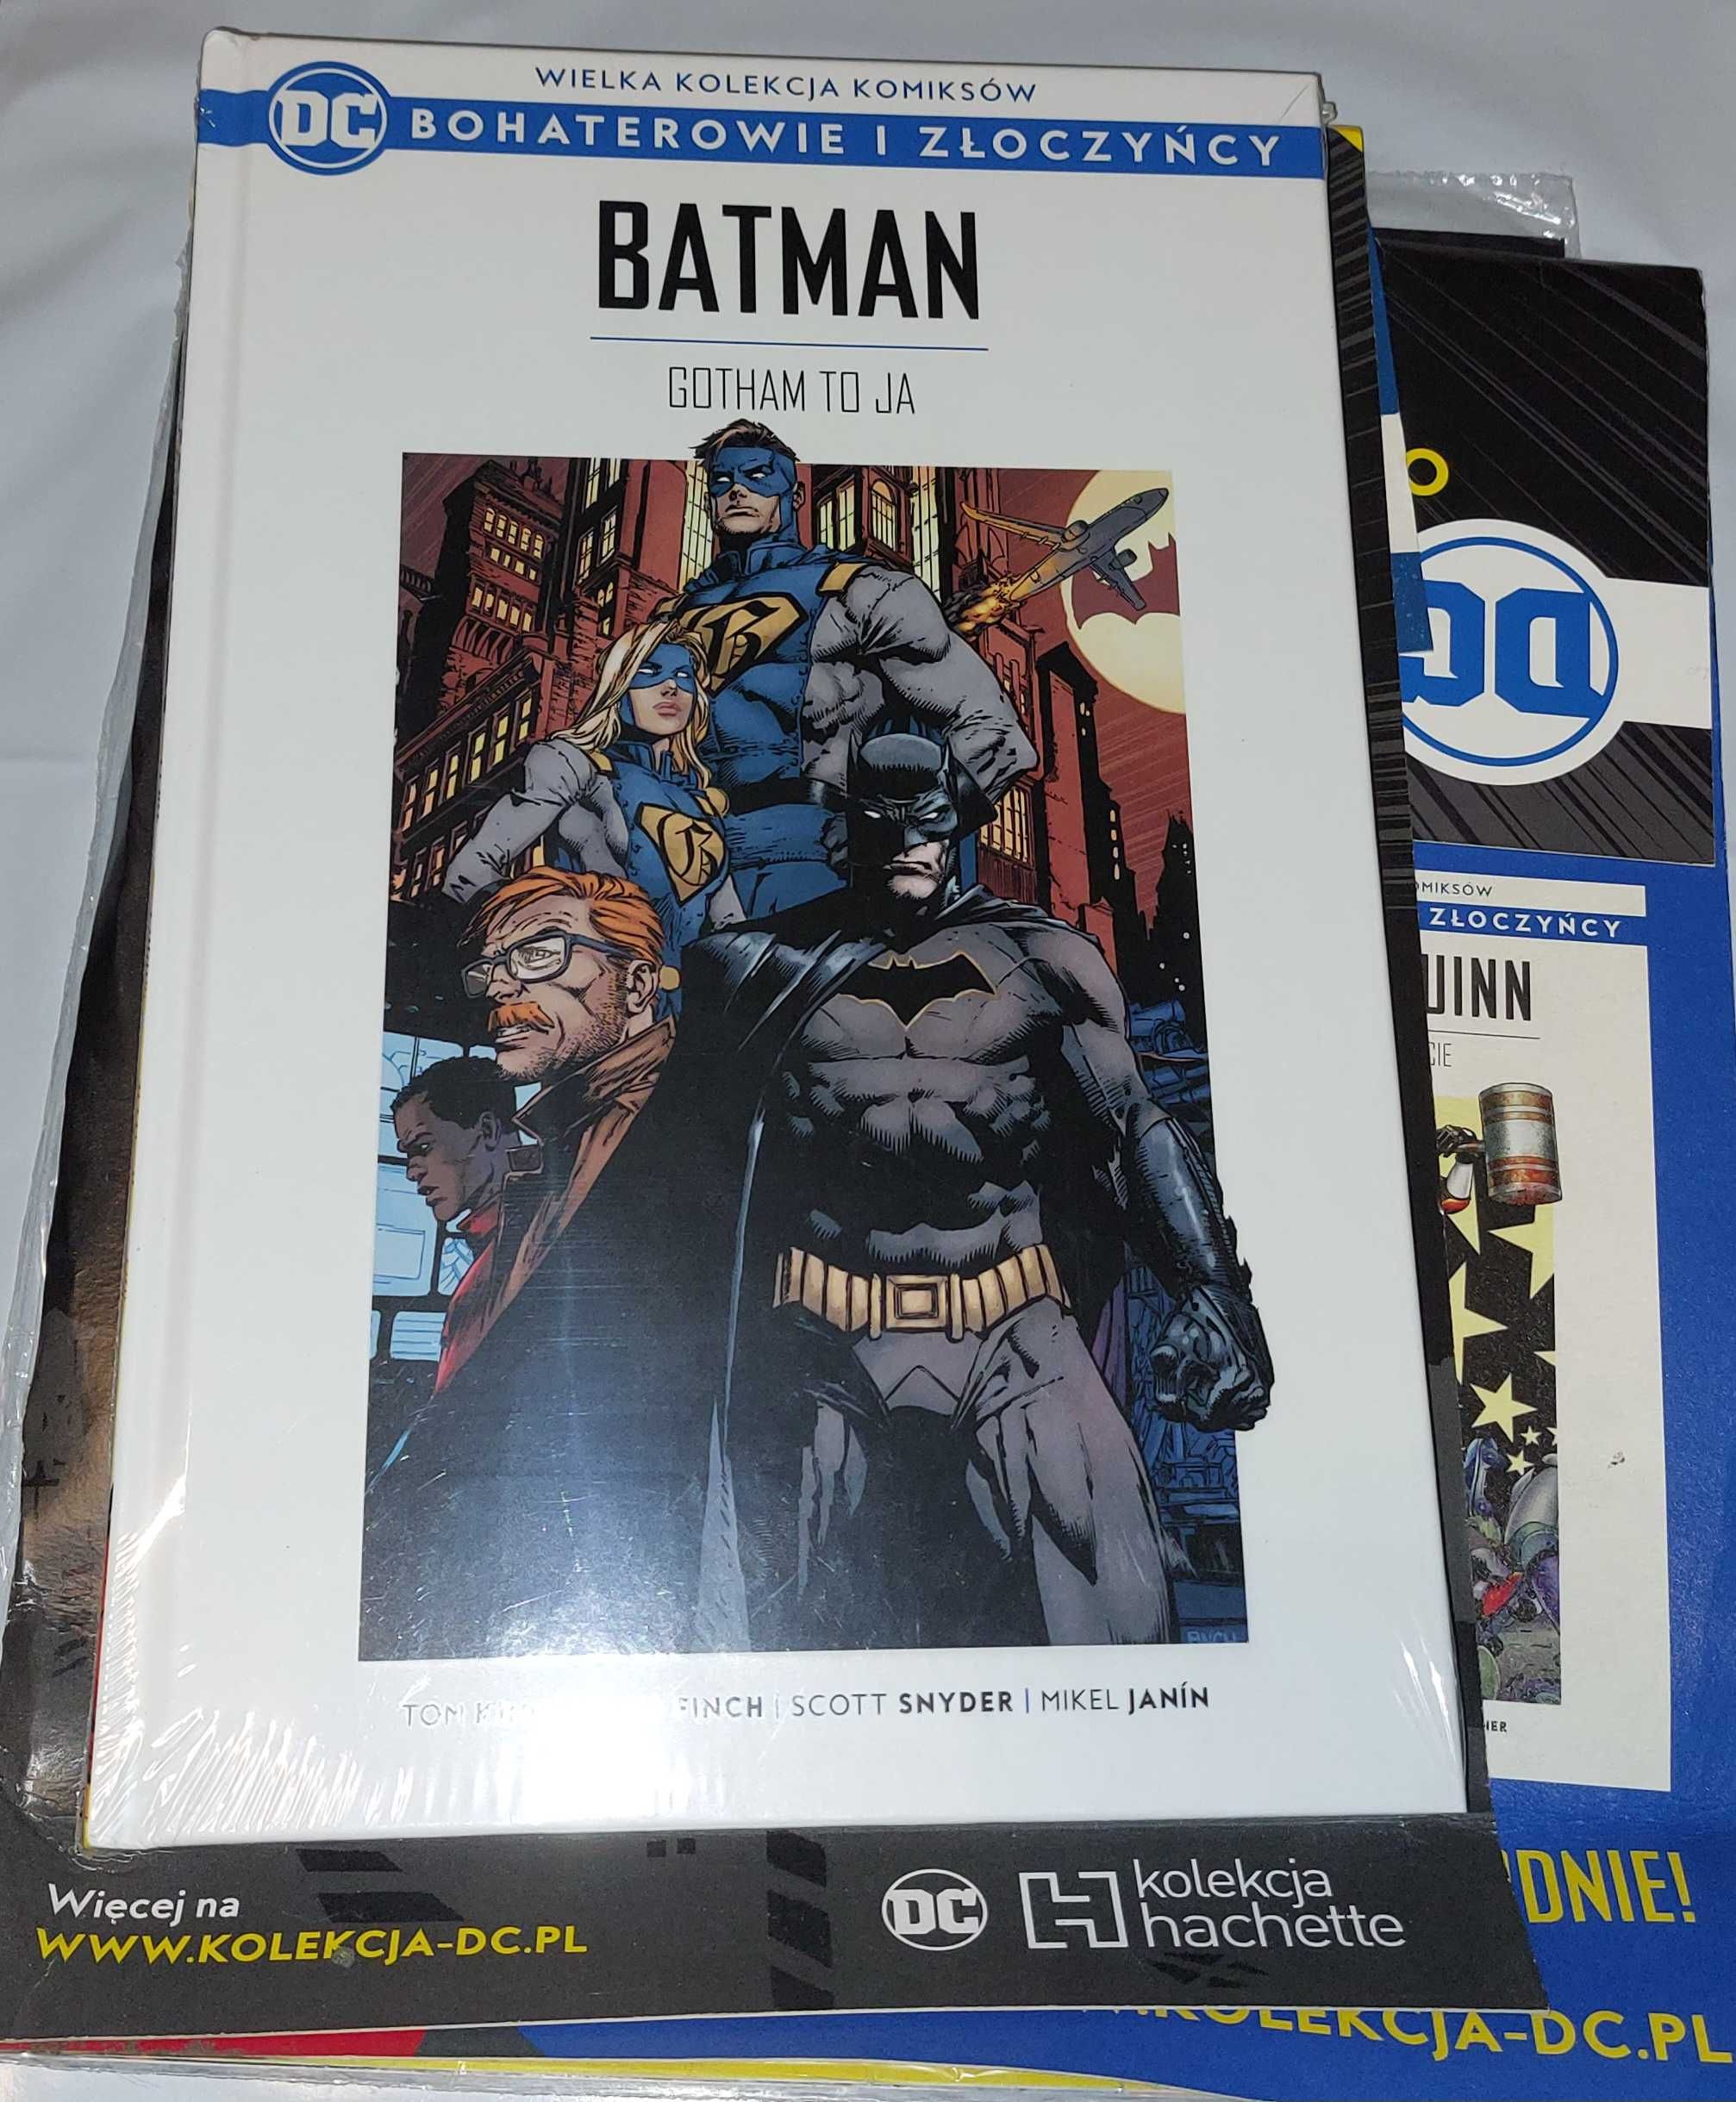 WKK DC  Bohaterowie i Złoczyńcy tom 1. "Batman - Gotham to Ja"